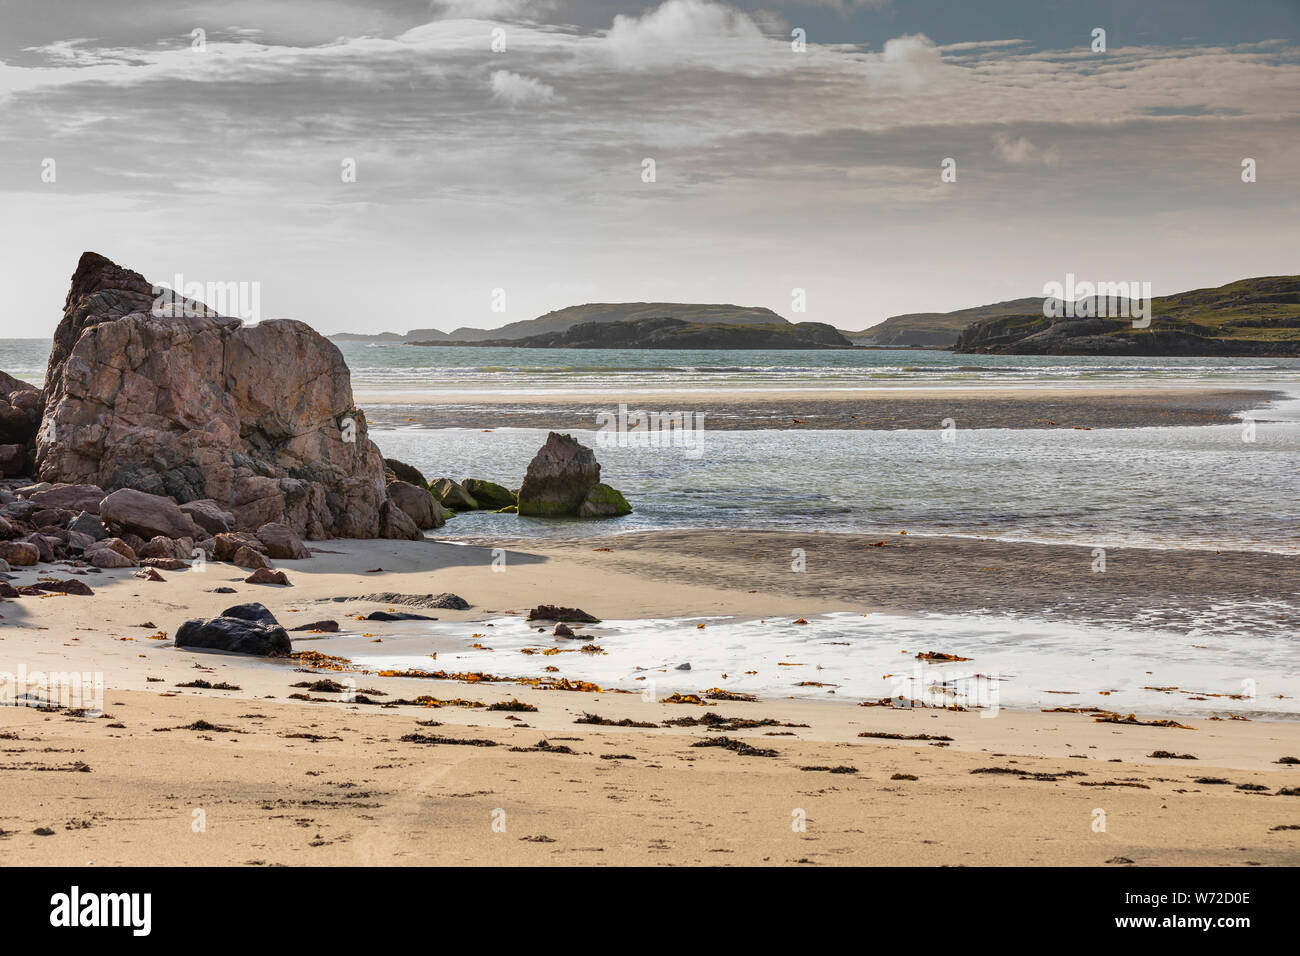 Playa de arena con dune grass en Escocia, la isla de Lewis con marea baja. Foto de stock